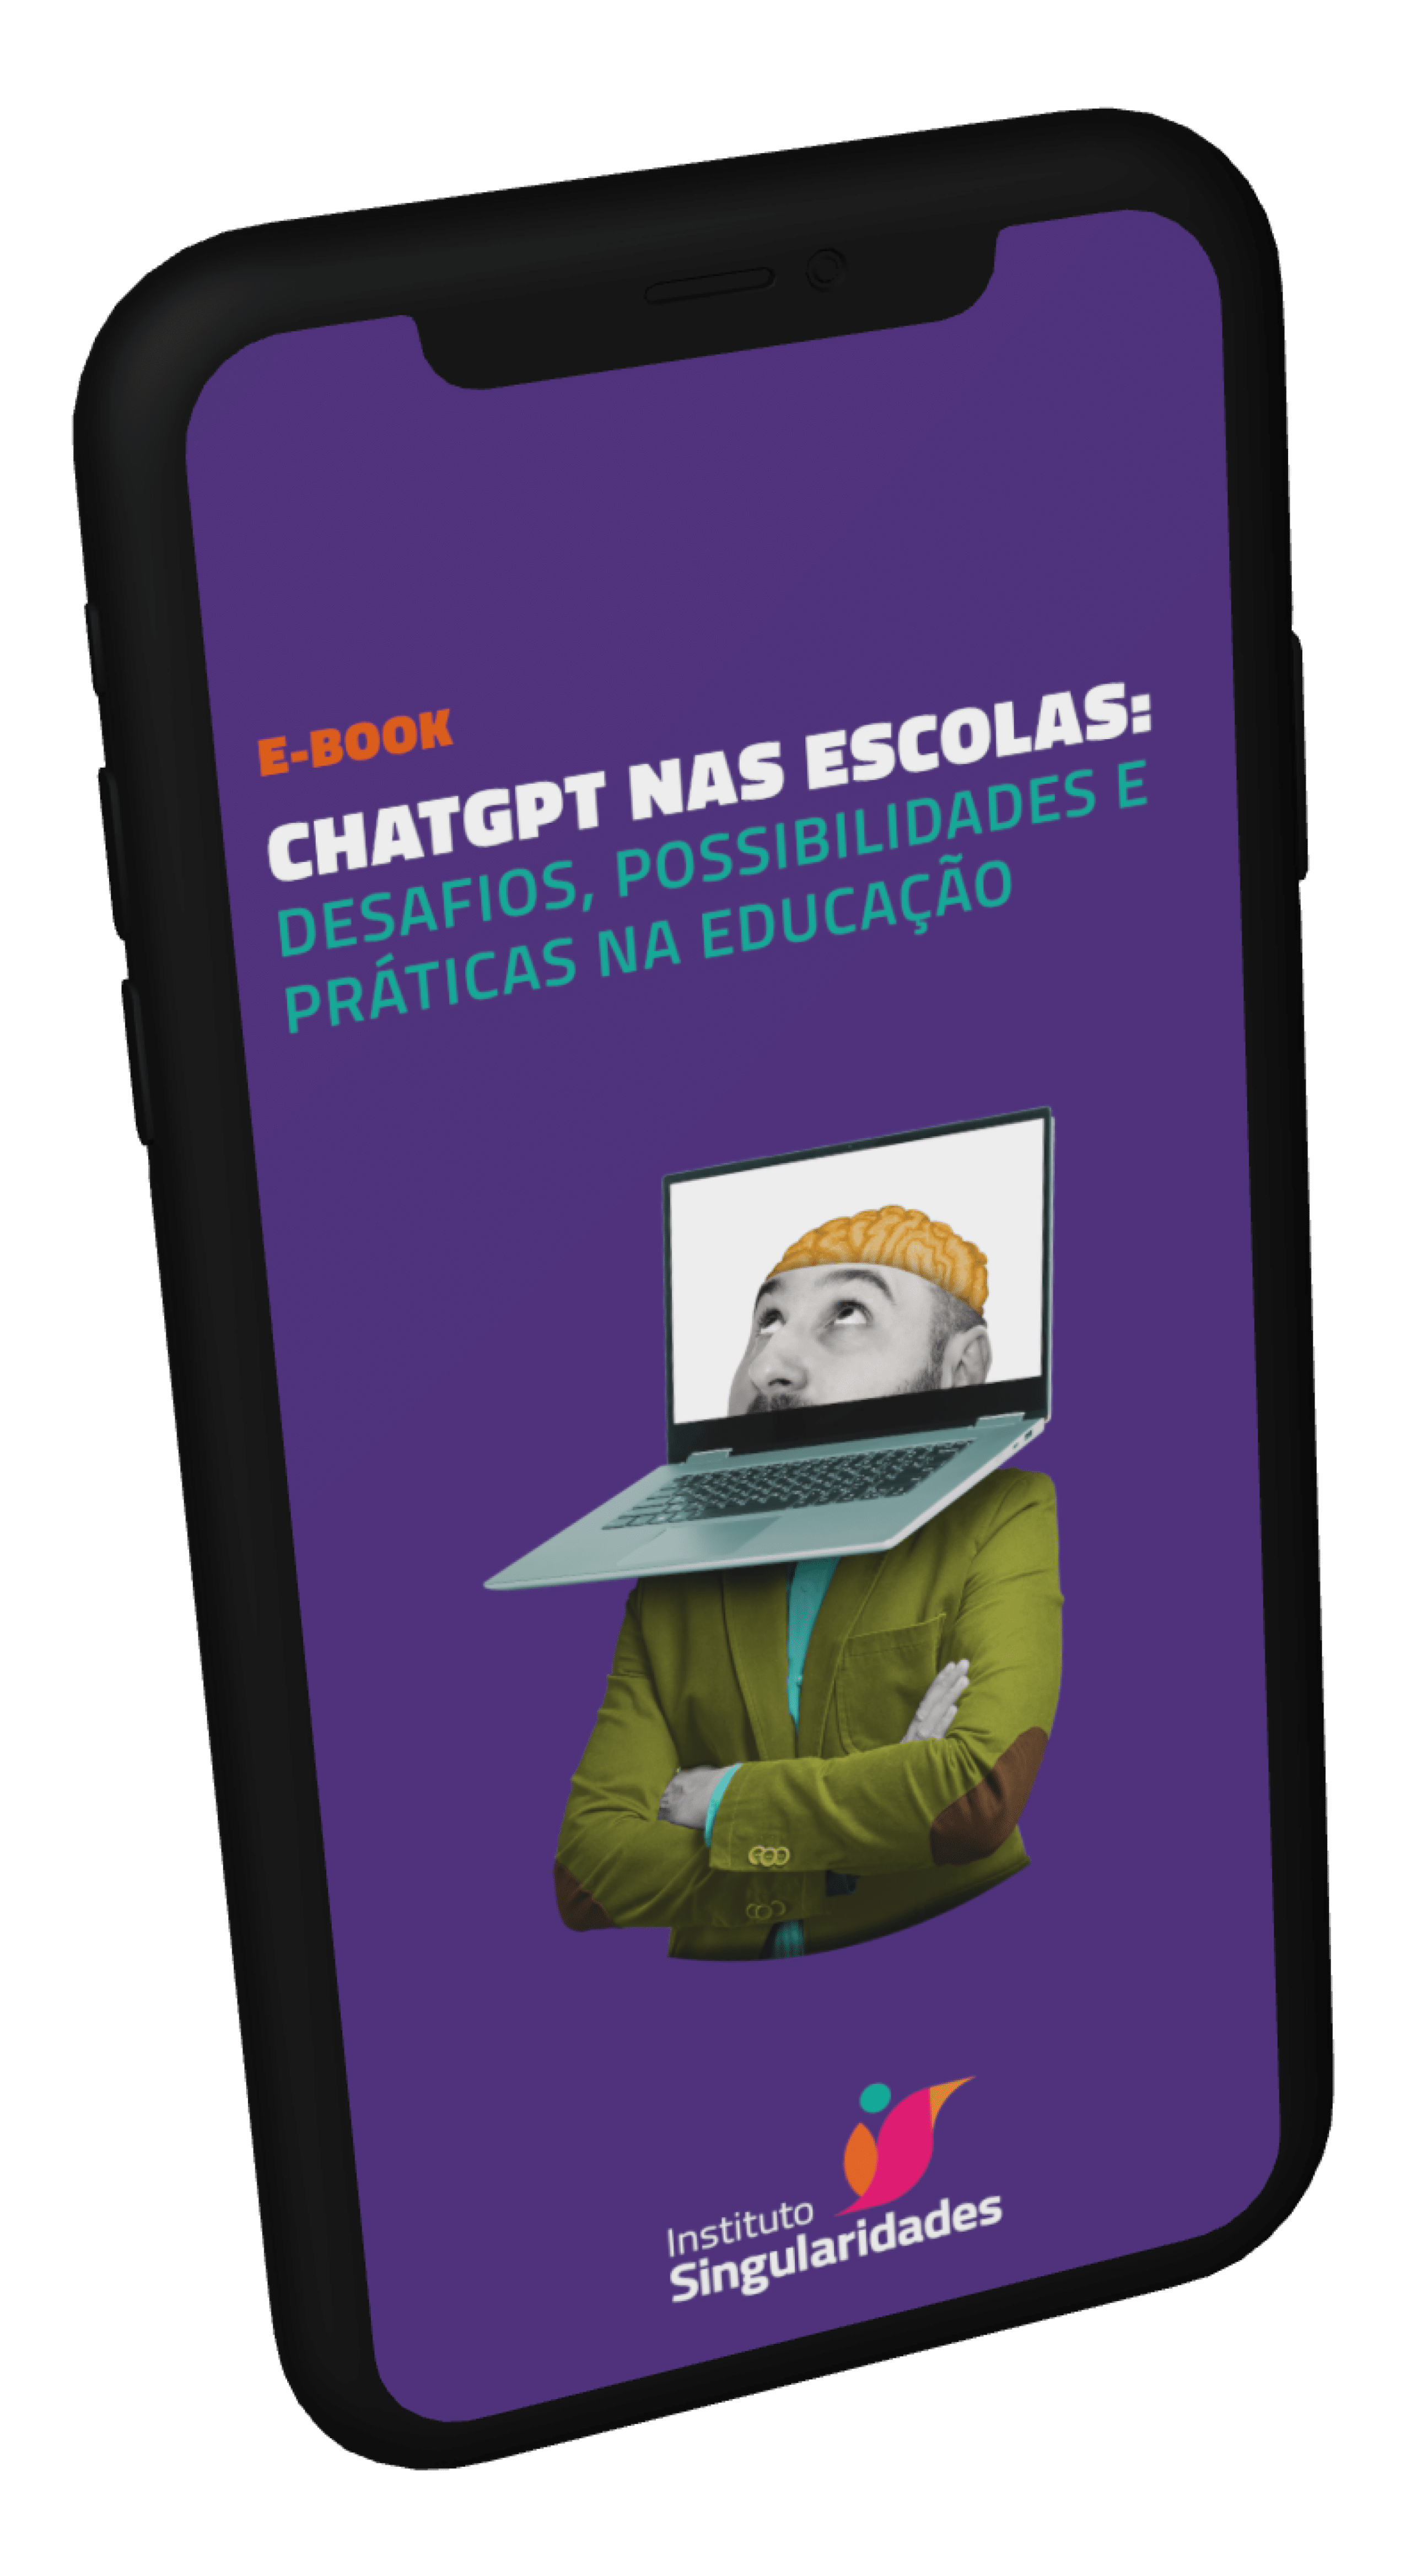 E-book_ChatGPT_Nas_Escolas_Instituto_Singularidades